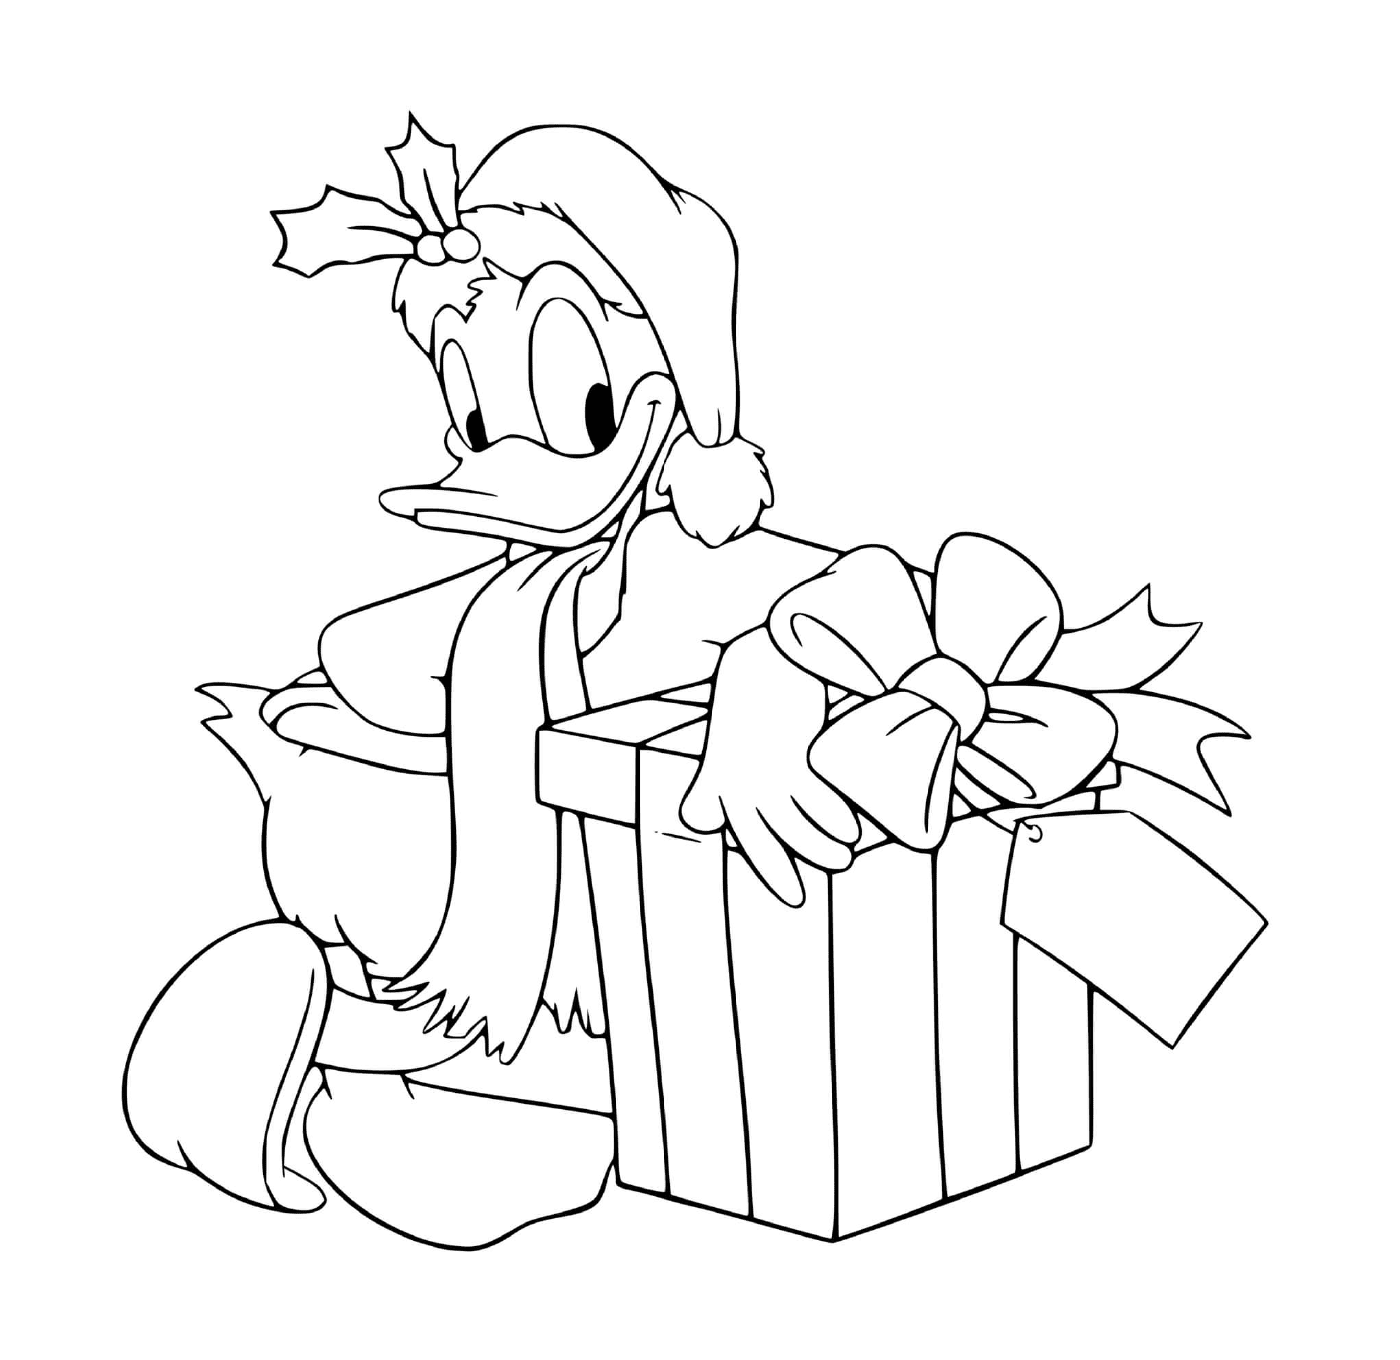  Donald accanto a un regalo 